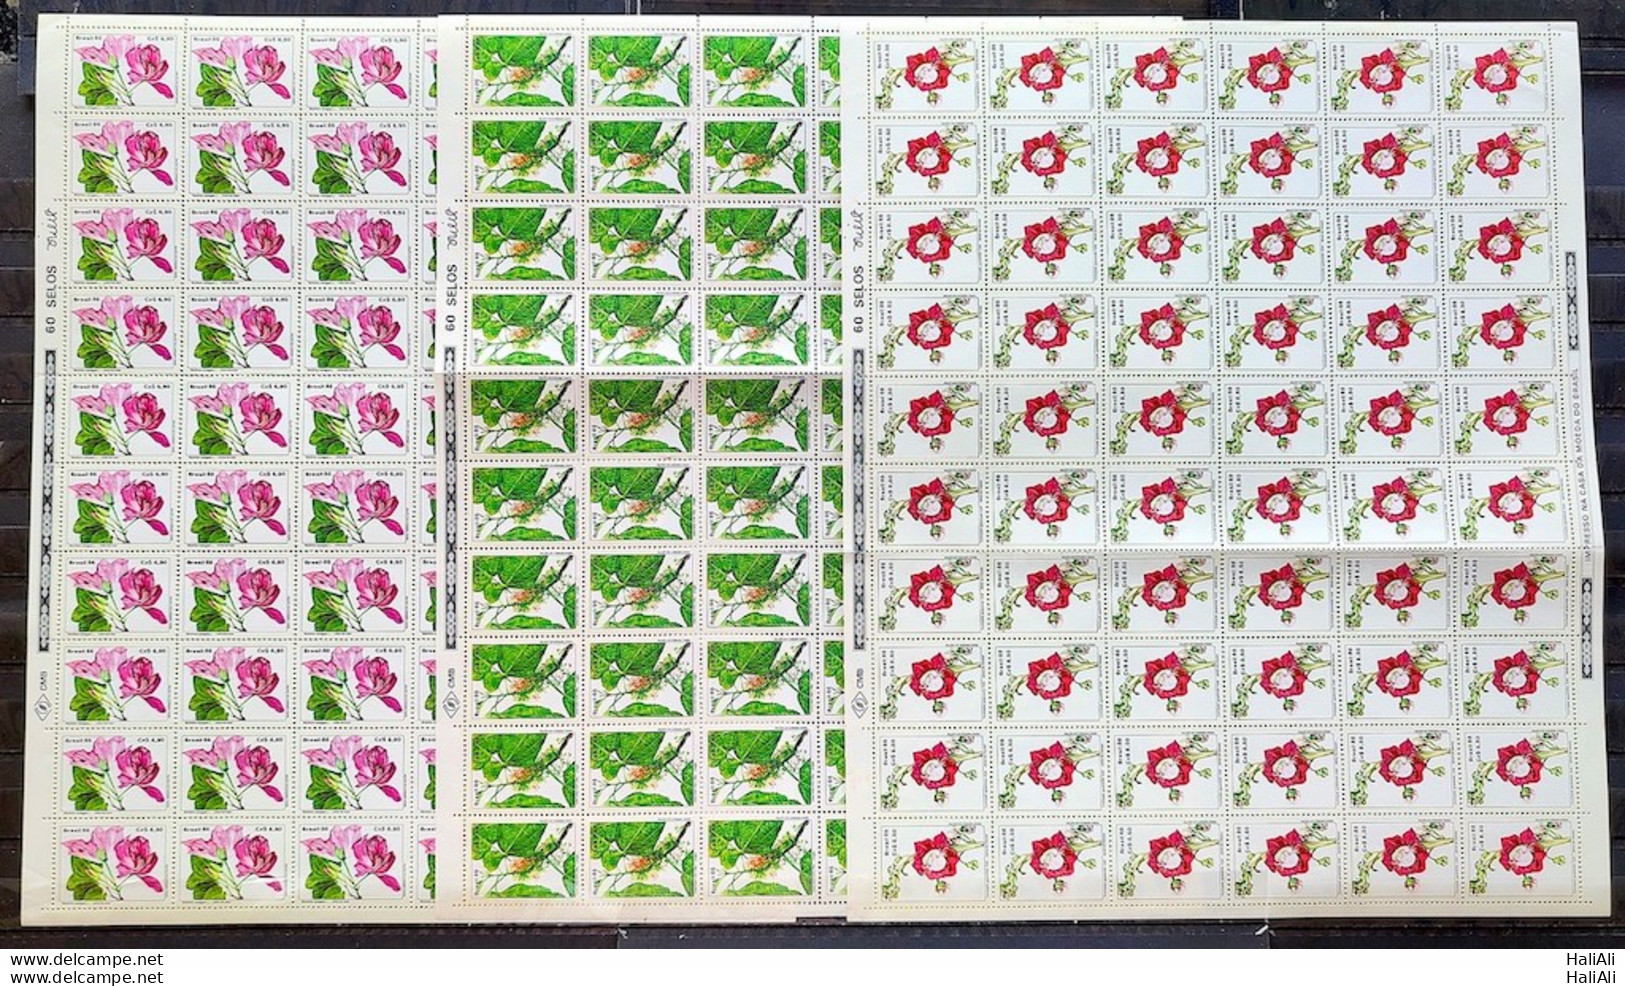 C 1523 Brazil Stamp Flora Flowers 1986 Sheet Complete Series - Ungebraucht